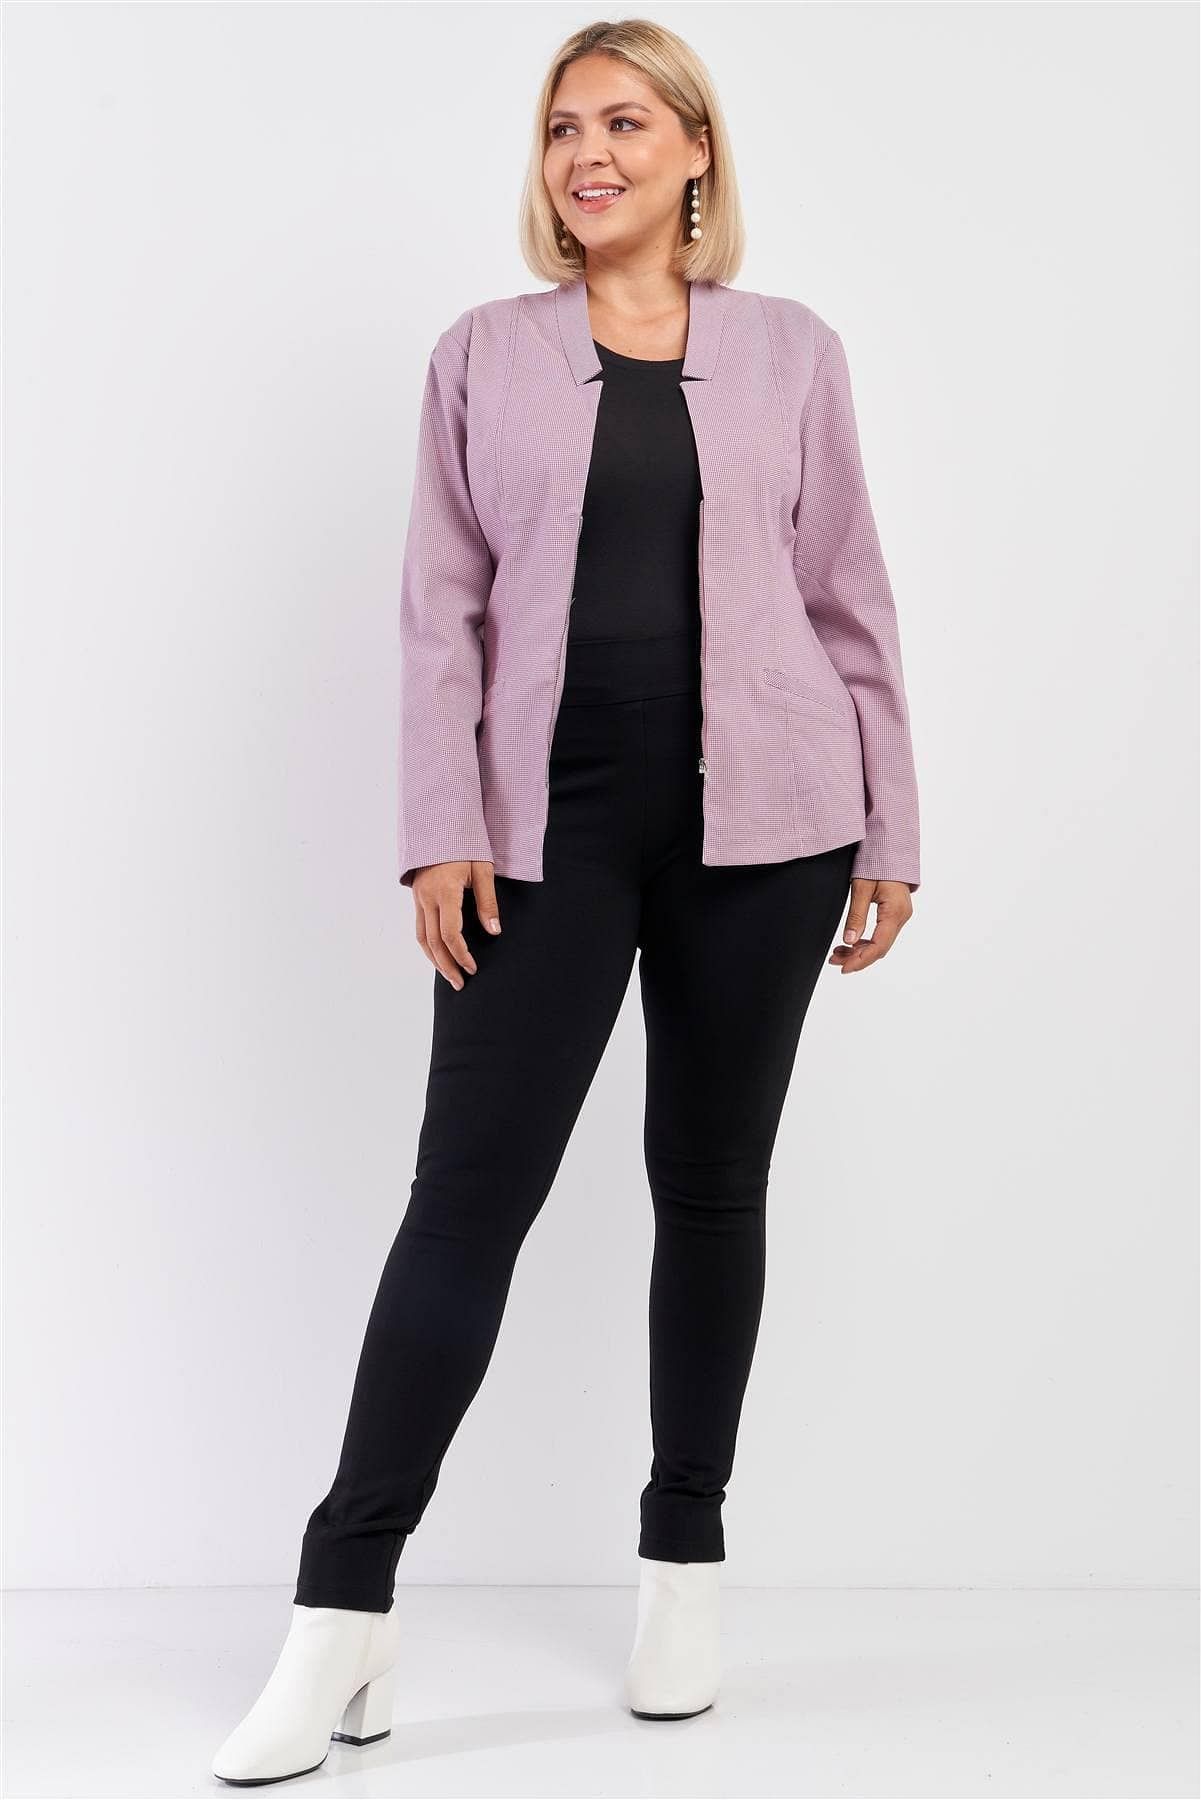 Mauve Plus Size Long Sleeve Jacket - Shopping Therapy, LLC Jacket